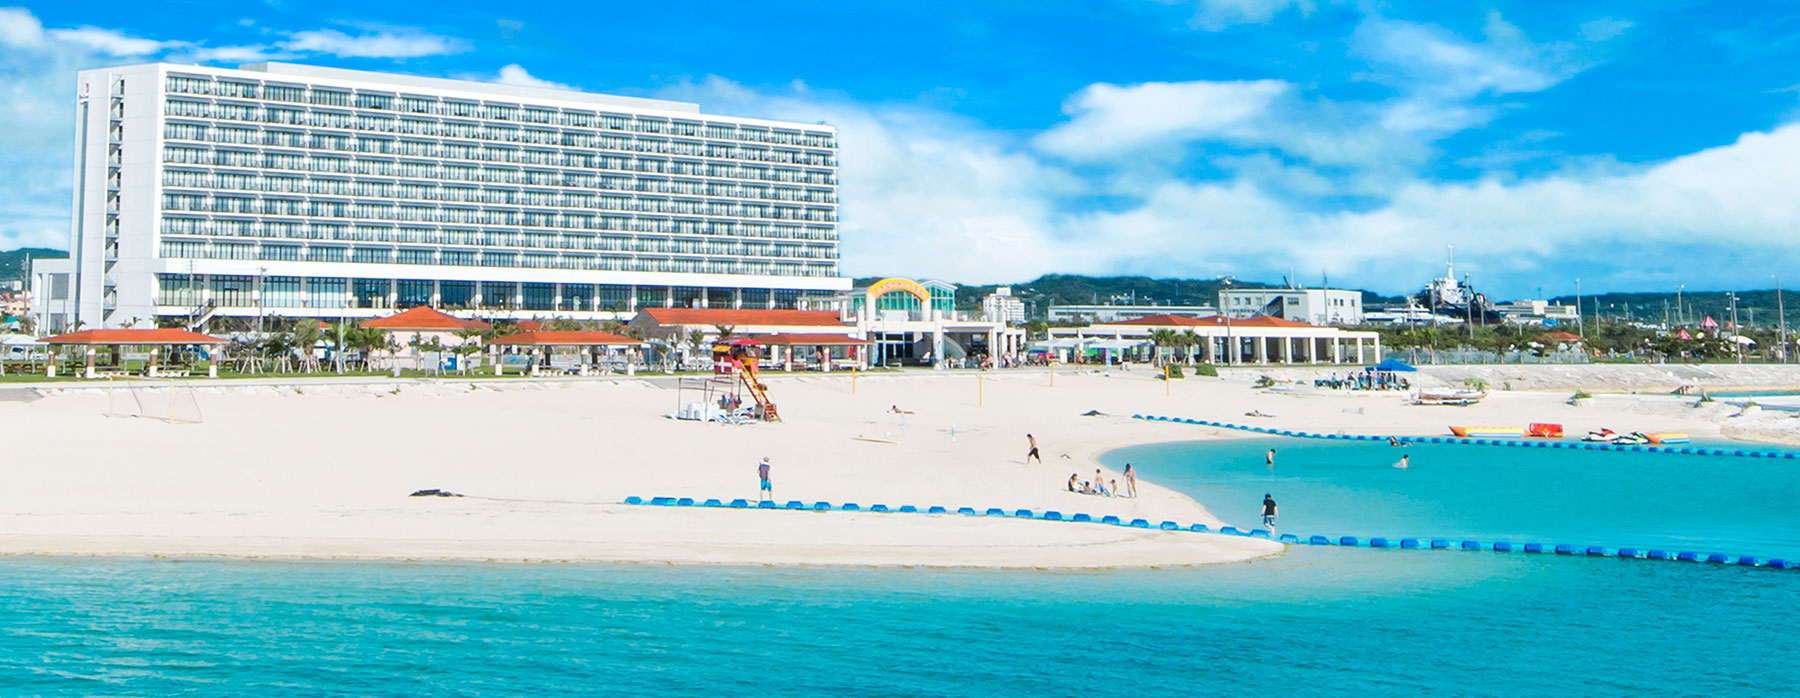 ホテル & リゾート サザン 沖縄 ビーチ